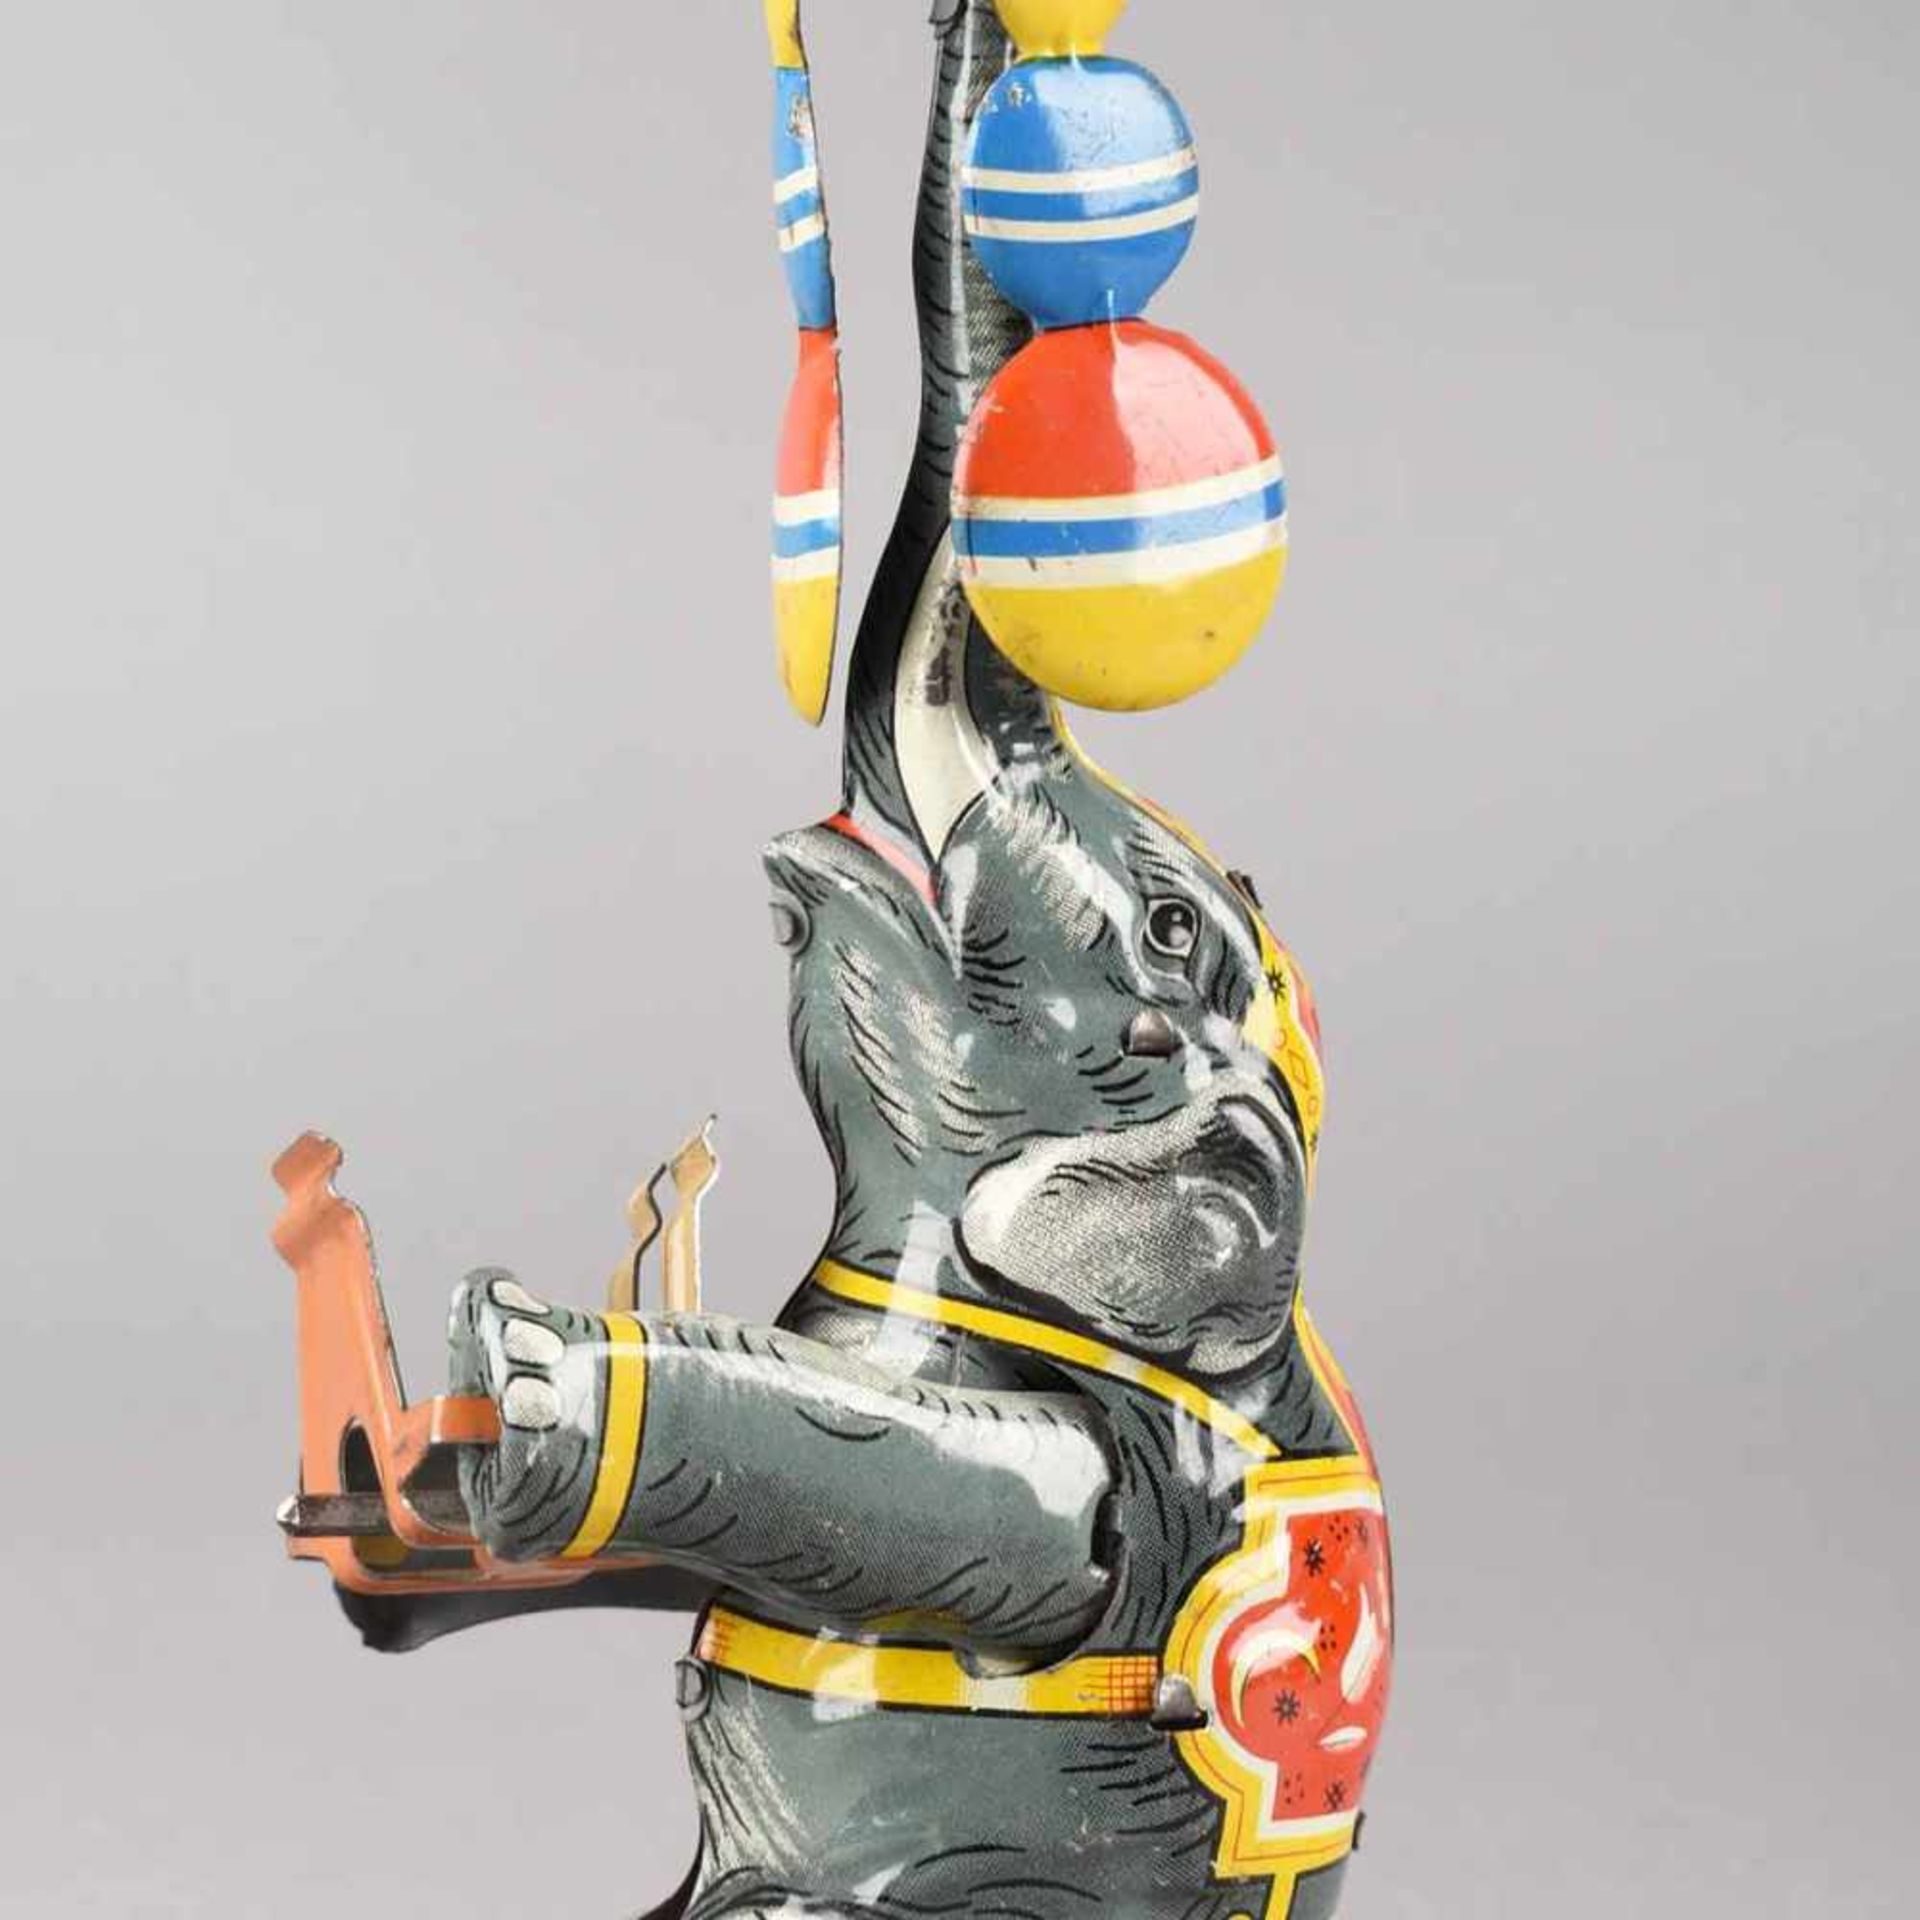 Elefantenfigur Blech, farbig lithografiert, Federaufzug, Elefant mit dem Rüssel jonglierend,